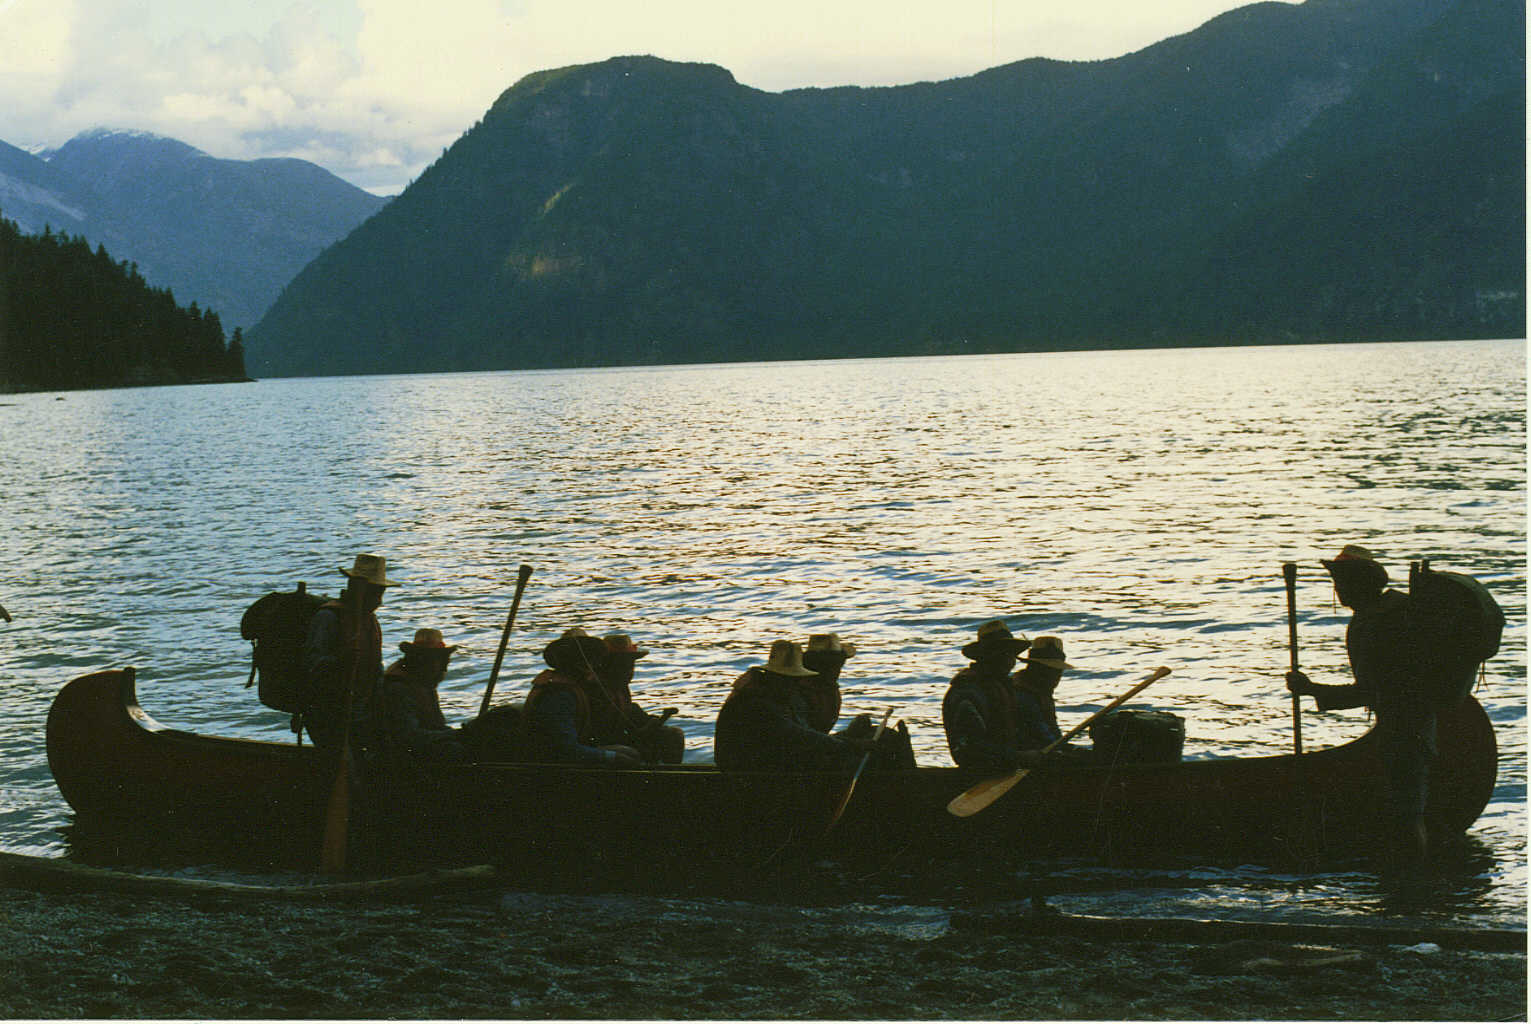 Voyageur Canoeing